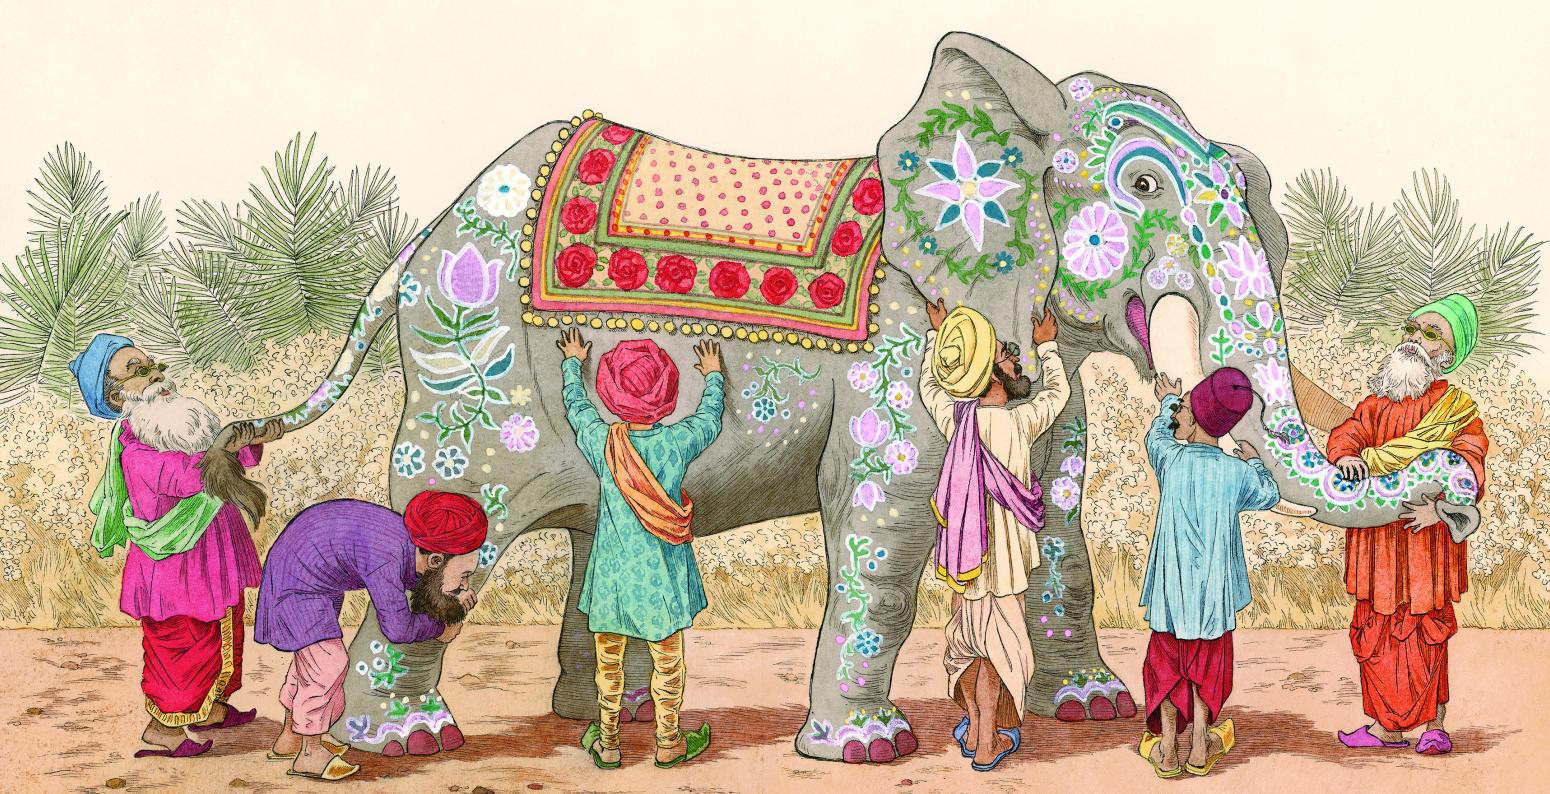 Illustration of elephant. 